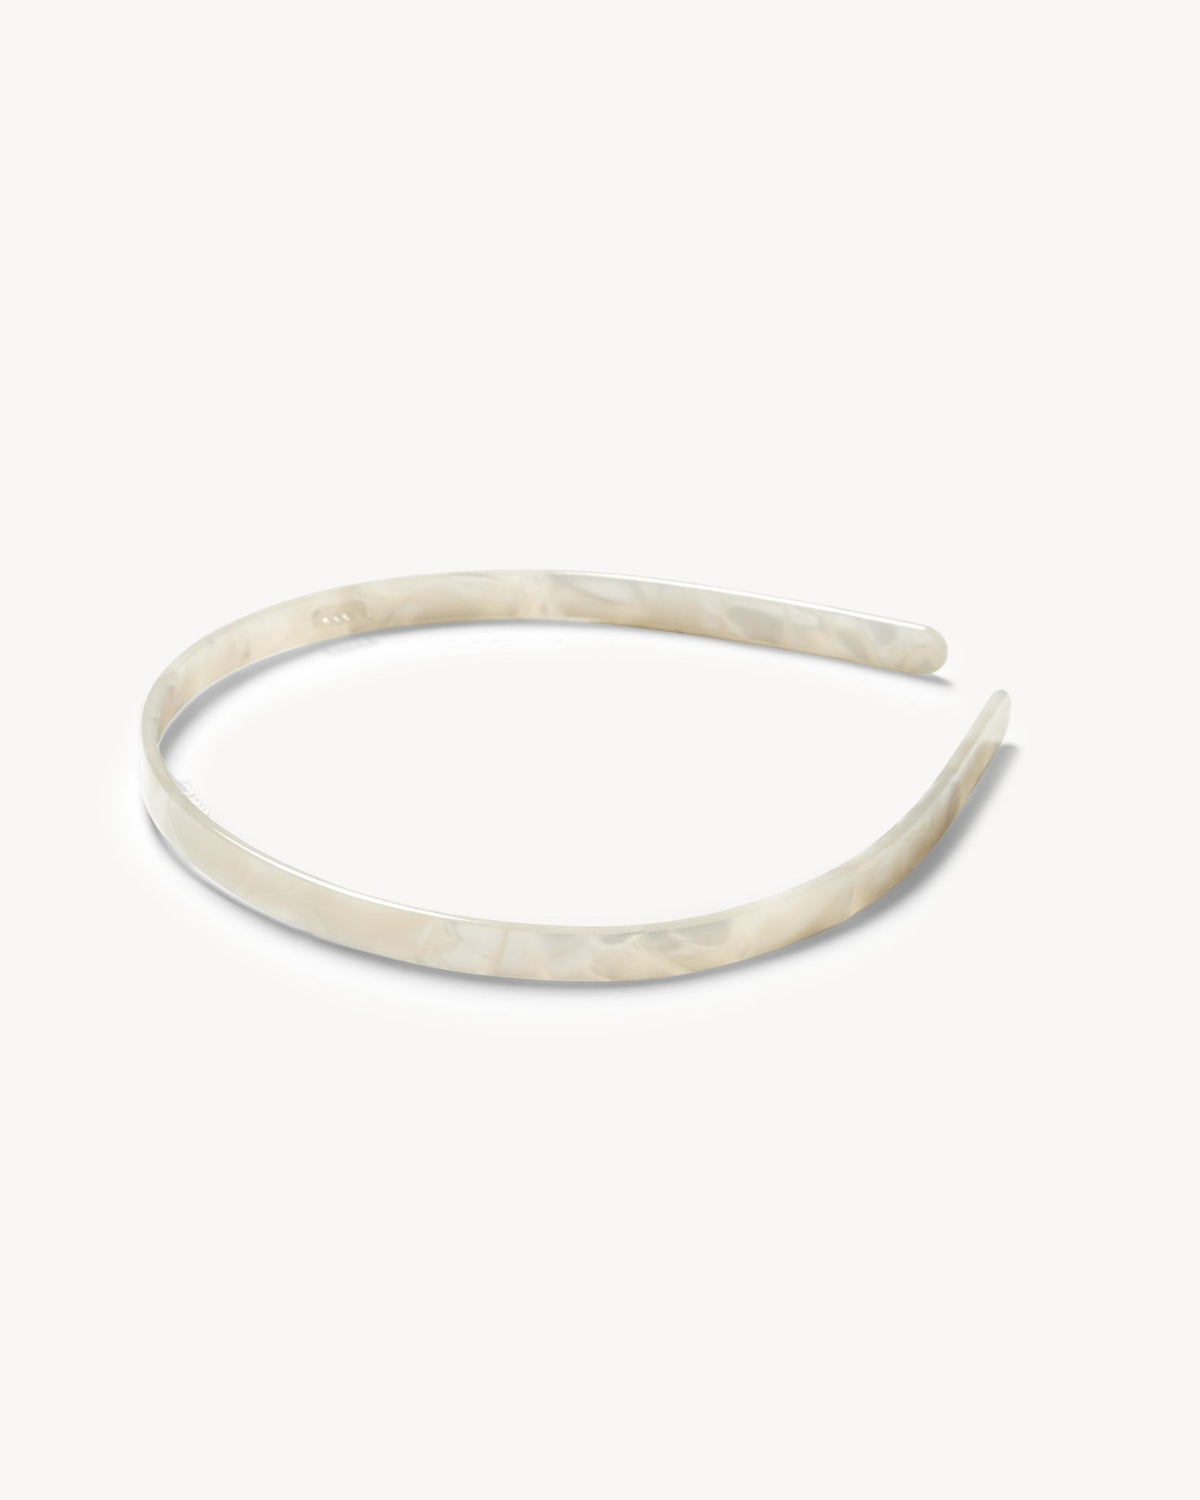 Ultralight Thin Headband in White Shell - MACHETE